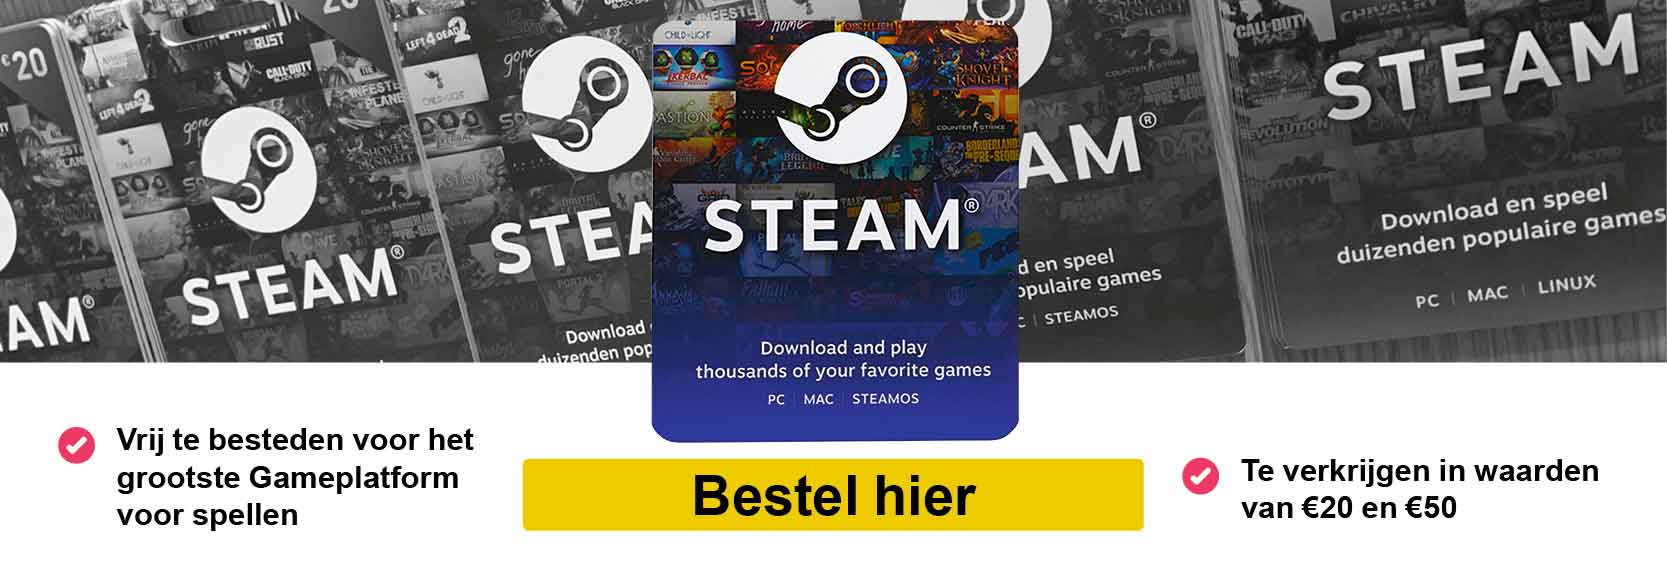 Steamcard_banner_def